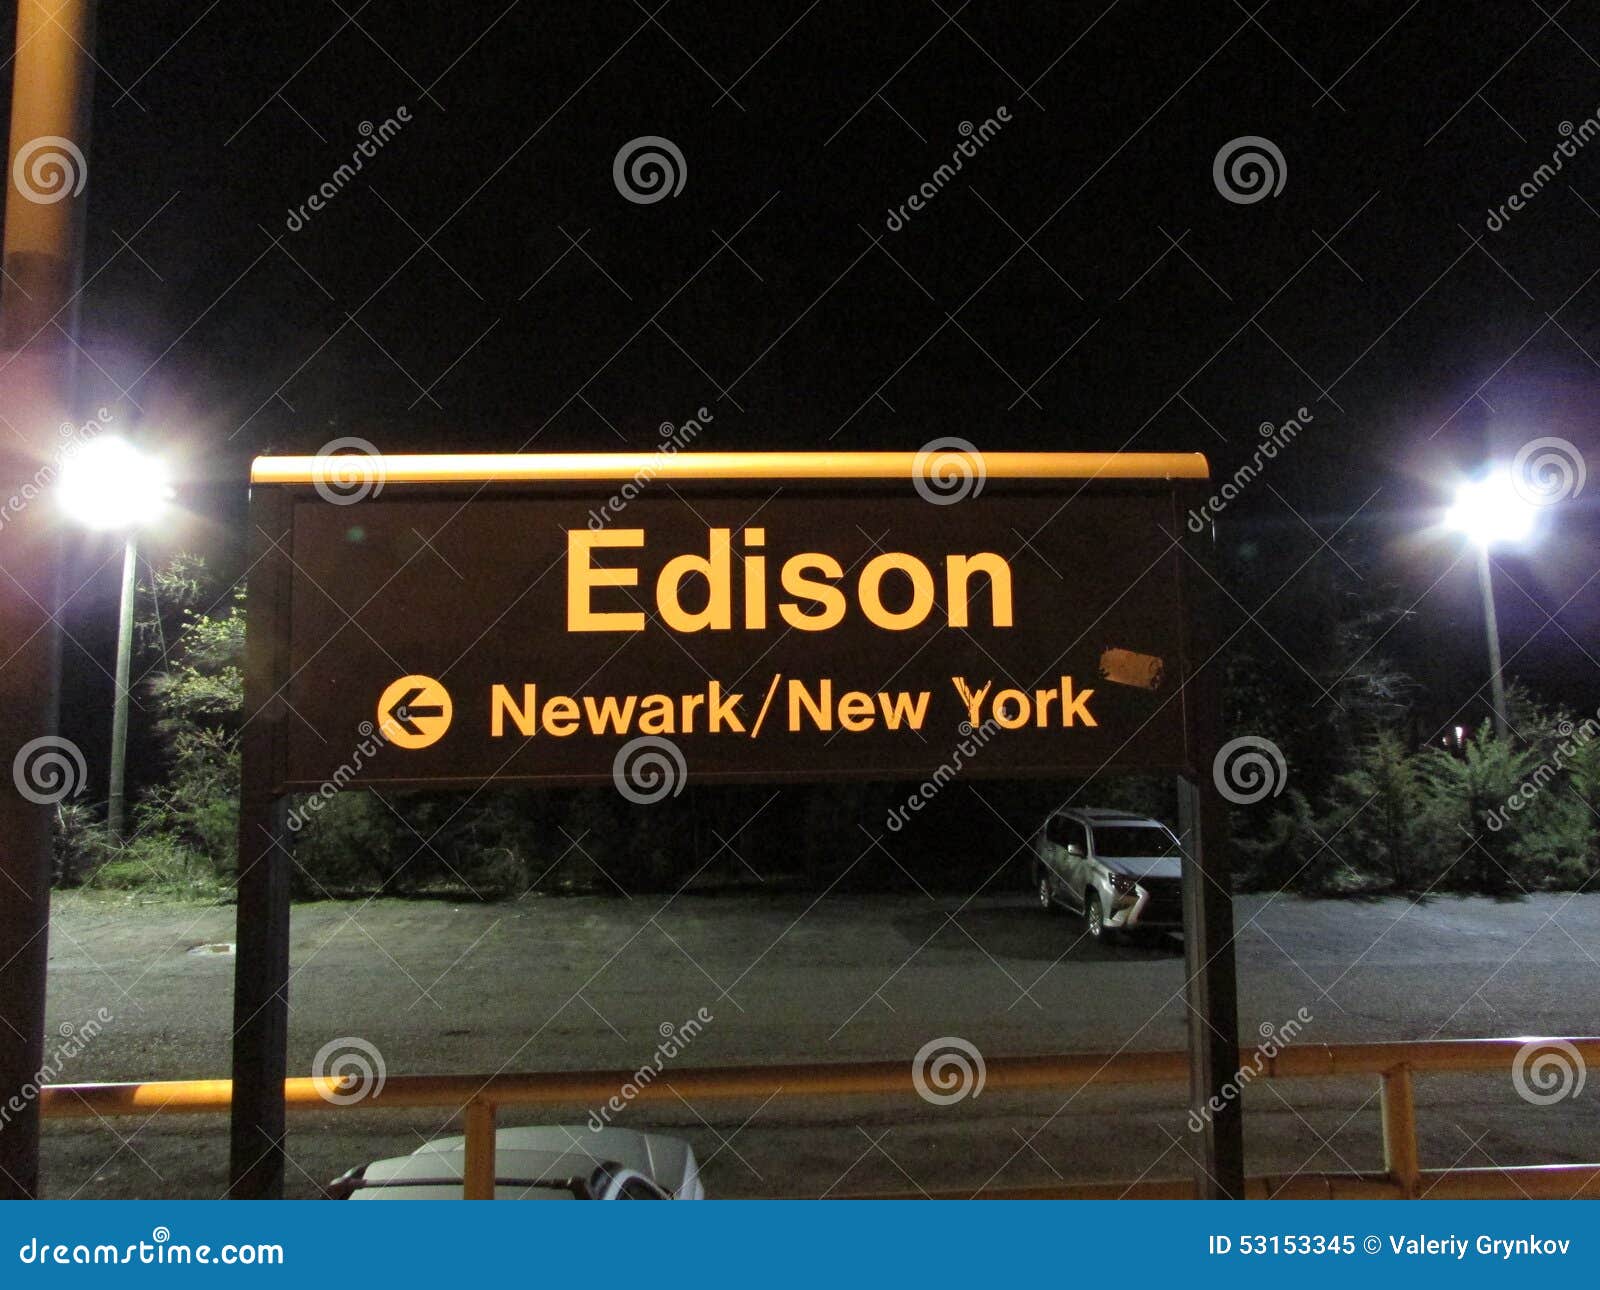 edison to newark penn station